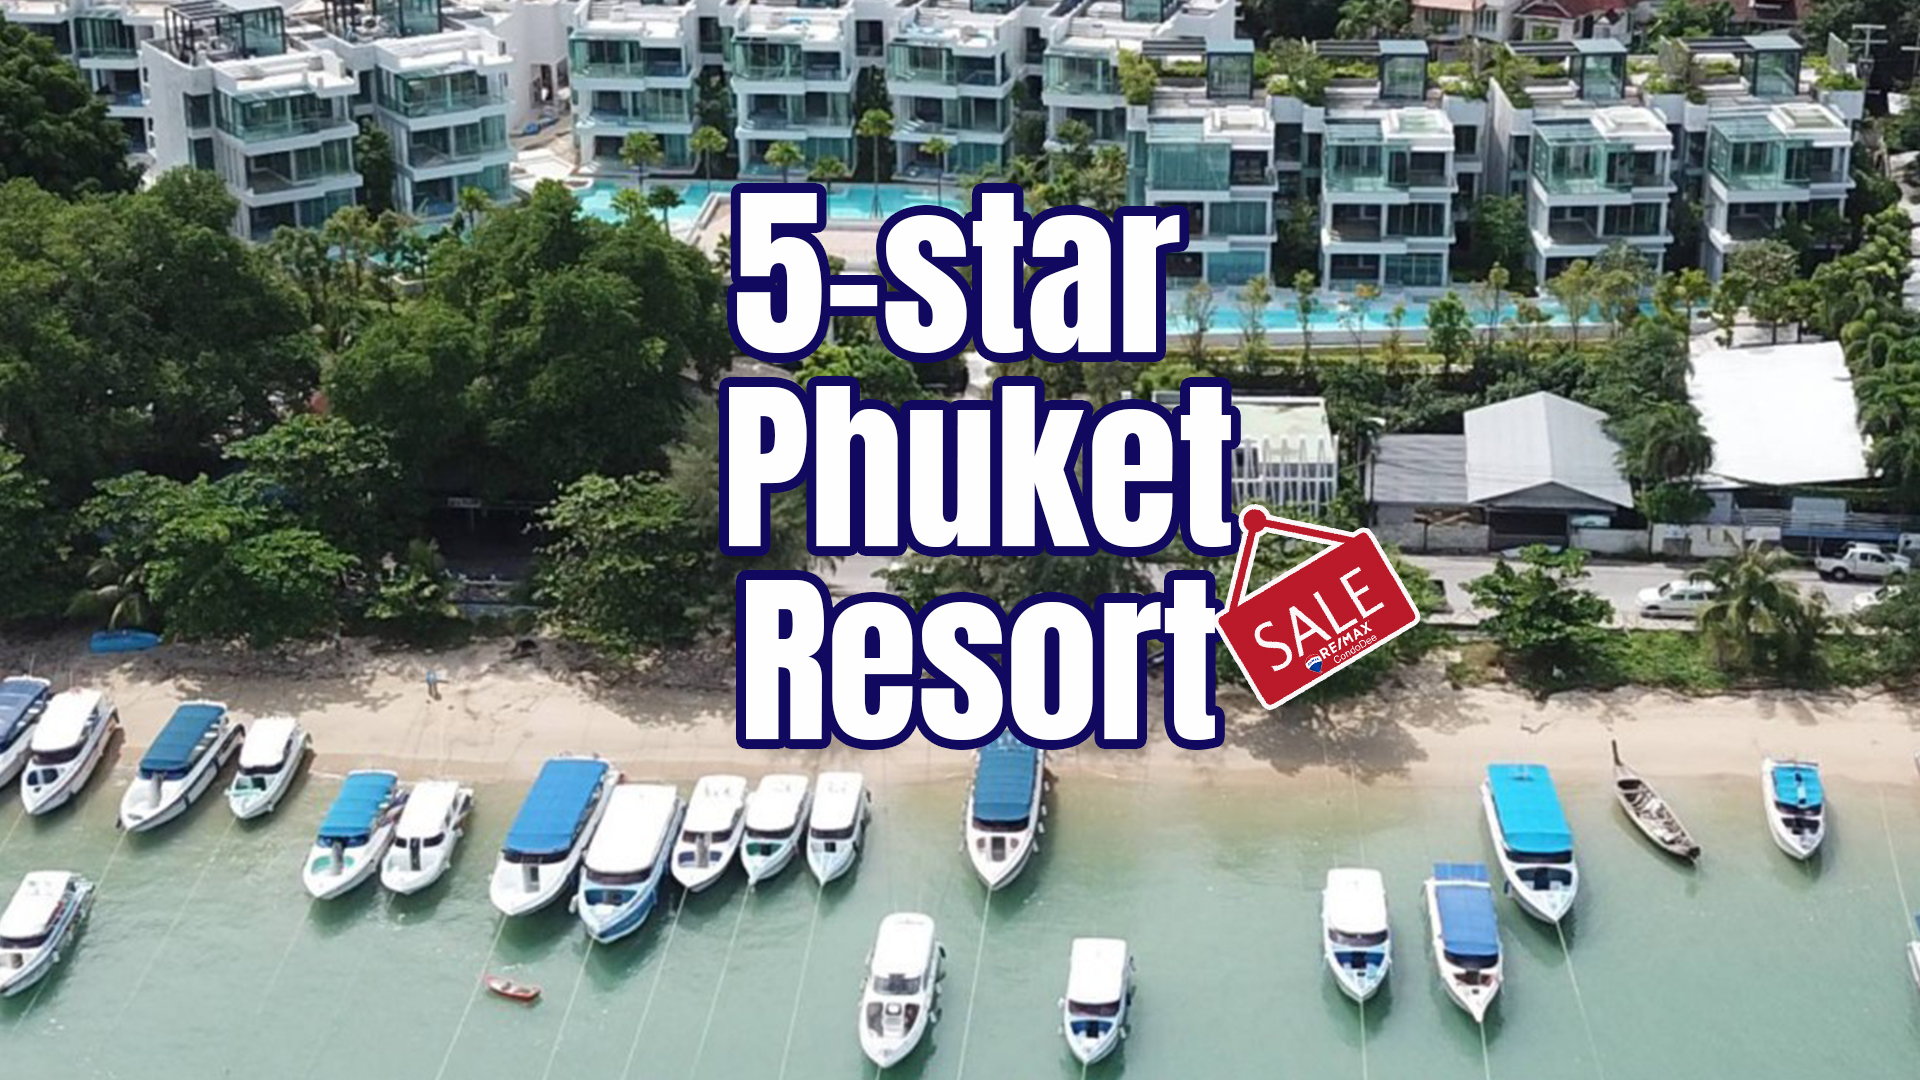 5-star beachfron resort in Phuket for sale